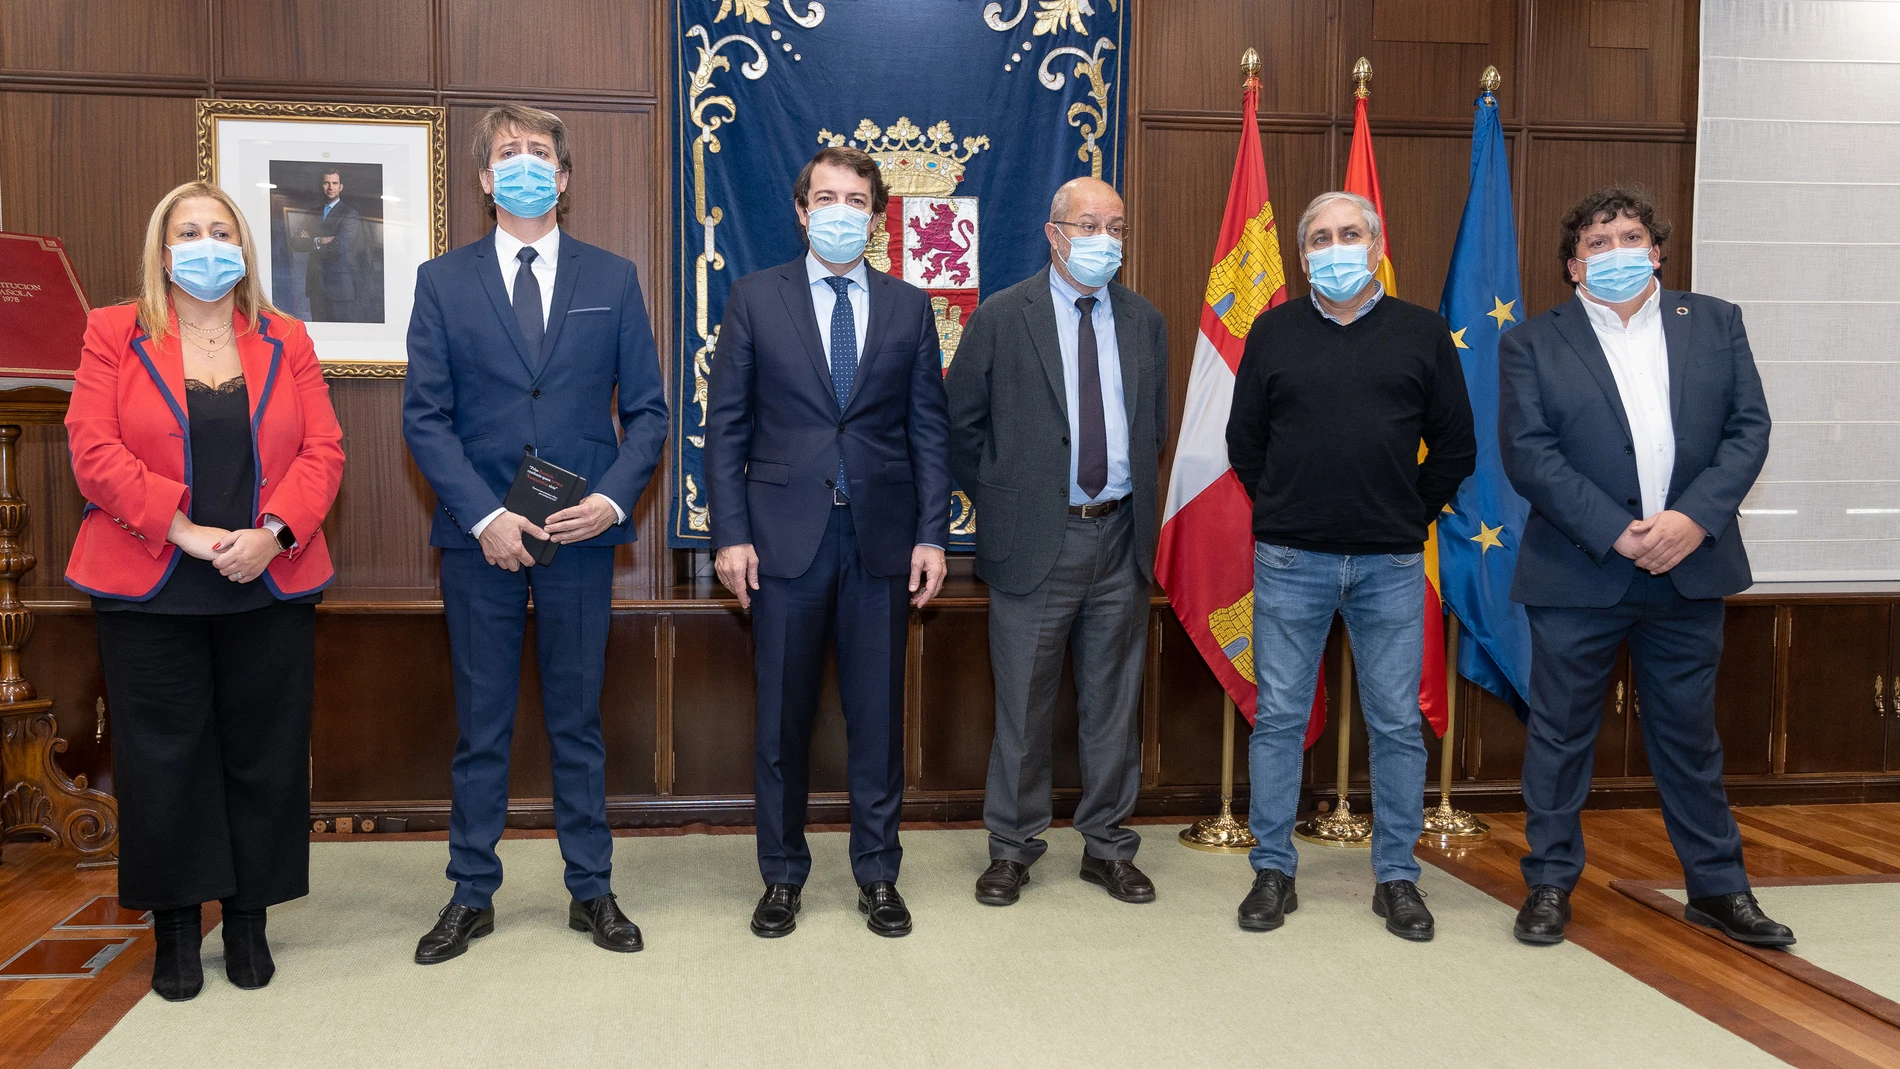 El presidente de la Junta de Castilla y León, Alfonso Fernández Mañueco, se reúne con el alcalde de Soria, Carlos Martínez, con la presencia de Francisco Igea, entre otros